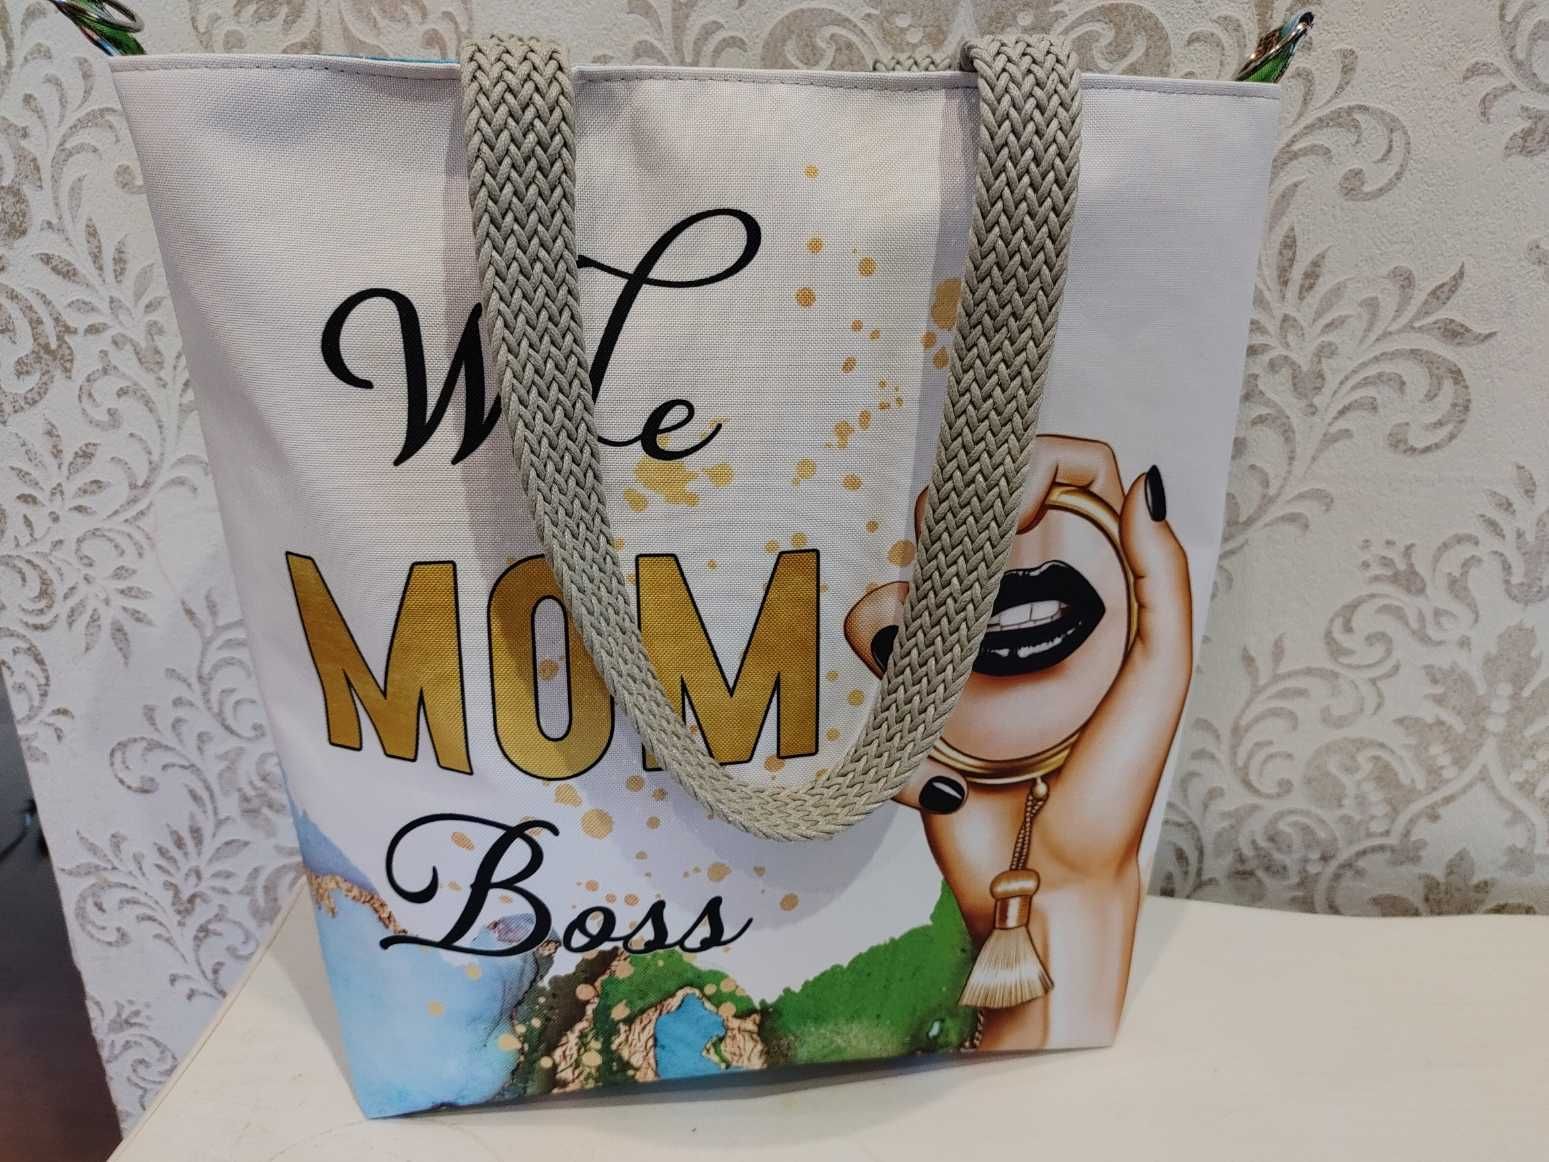 torebka torba wife mom boss / żona mama szefowa + saszetka (opcja)